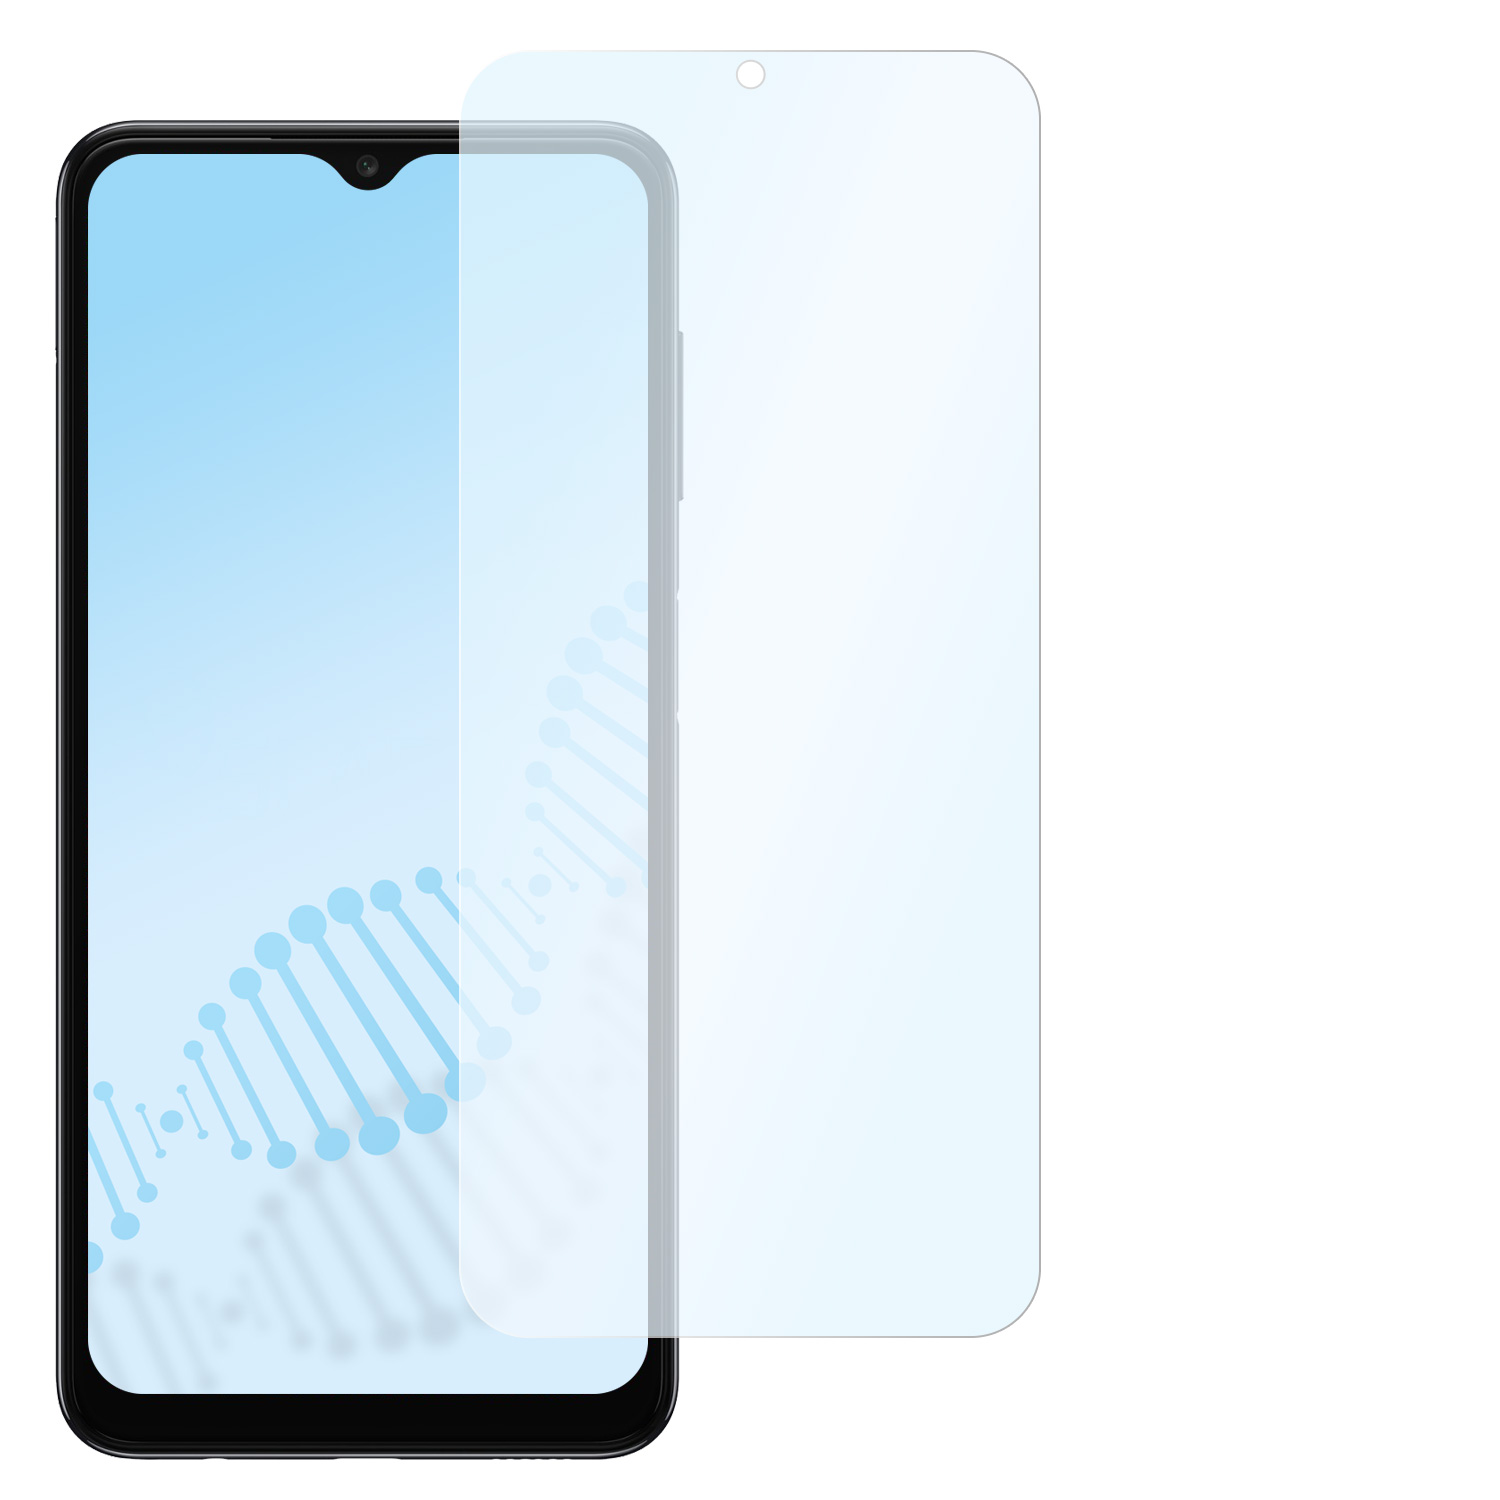 SLABO antibakteriell flexibles Hybridglas Samsung Displayschutz(für Galaxy Samsung A04s)